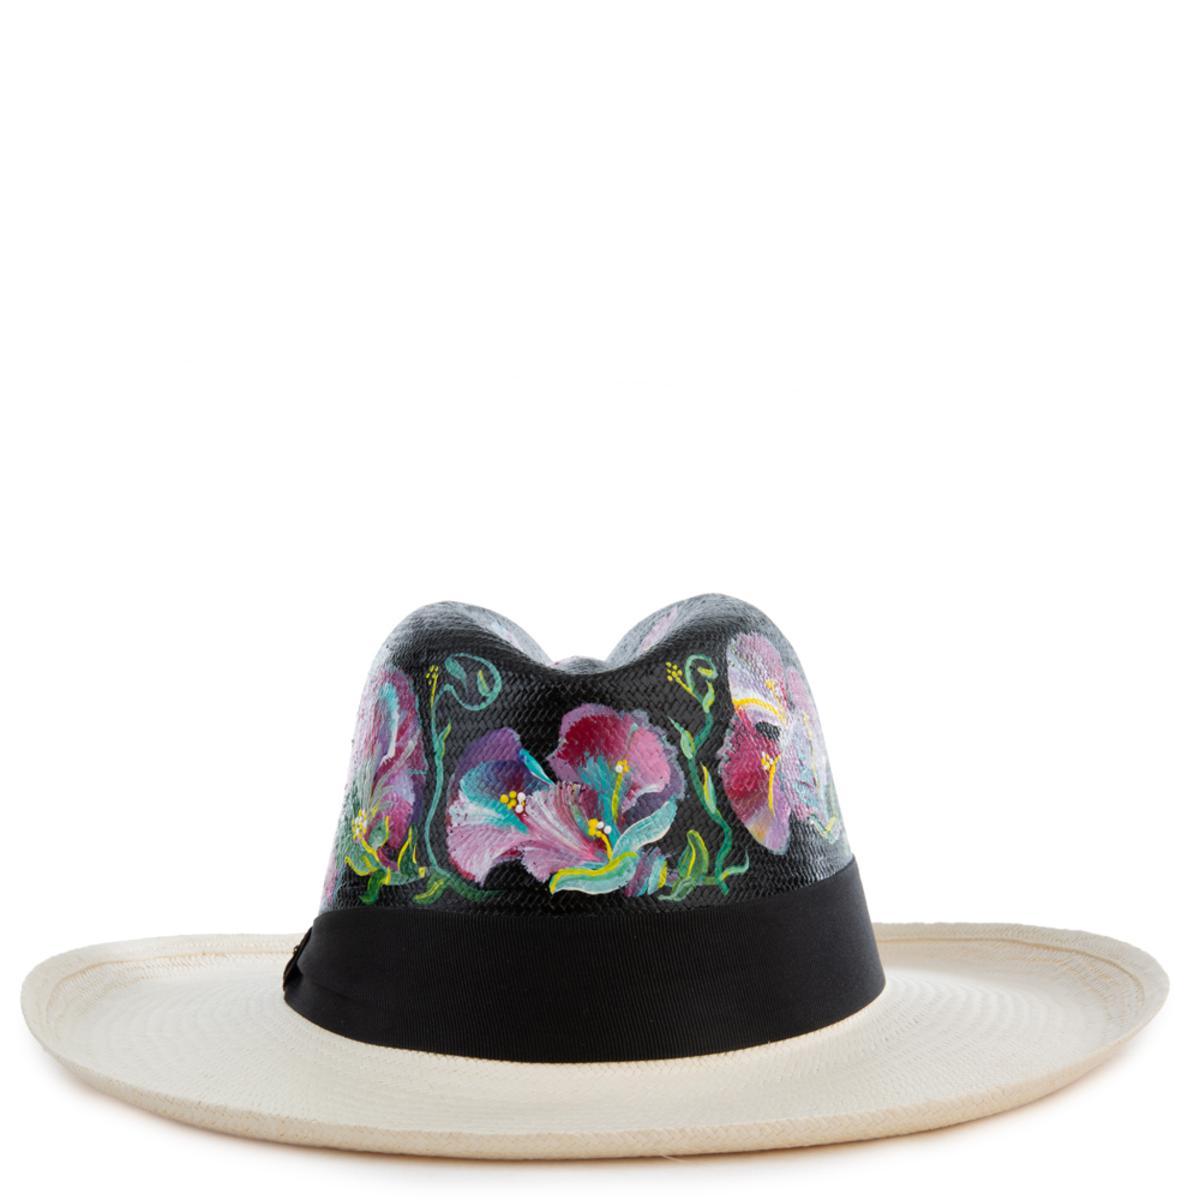 Flores De Invierno Panama Hat Size L